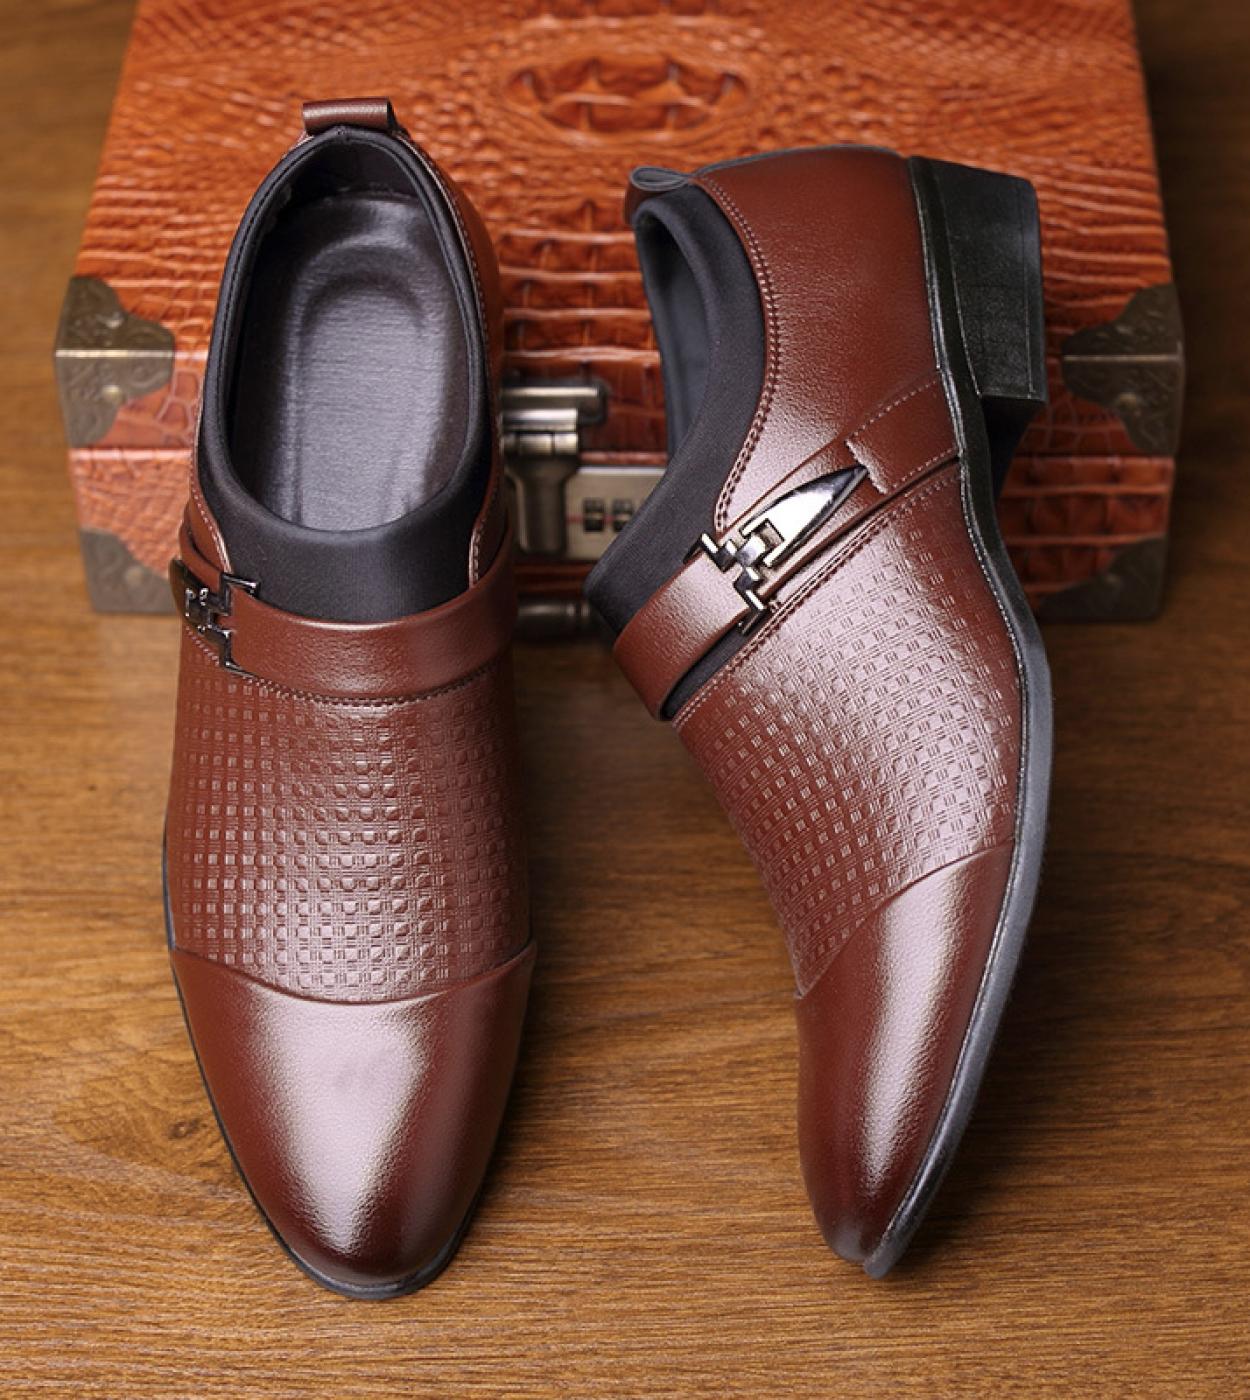 أحذية رسمية جديدة للرجال سهلة الارتداء بمقدمة مدببة من الجلد اللامع أحذية أكسفورد للرجال أحذية رسمية للأعمال مقاس كبير Df5 M